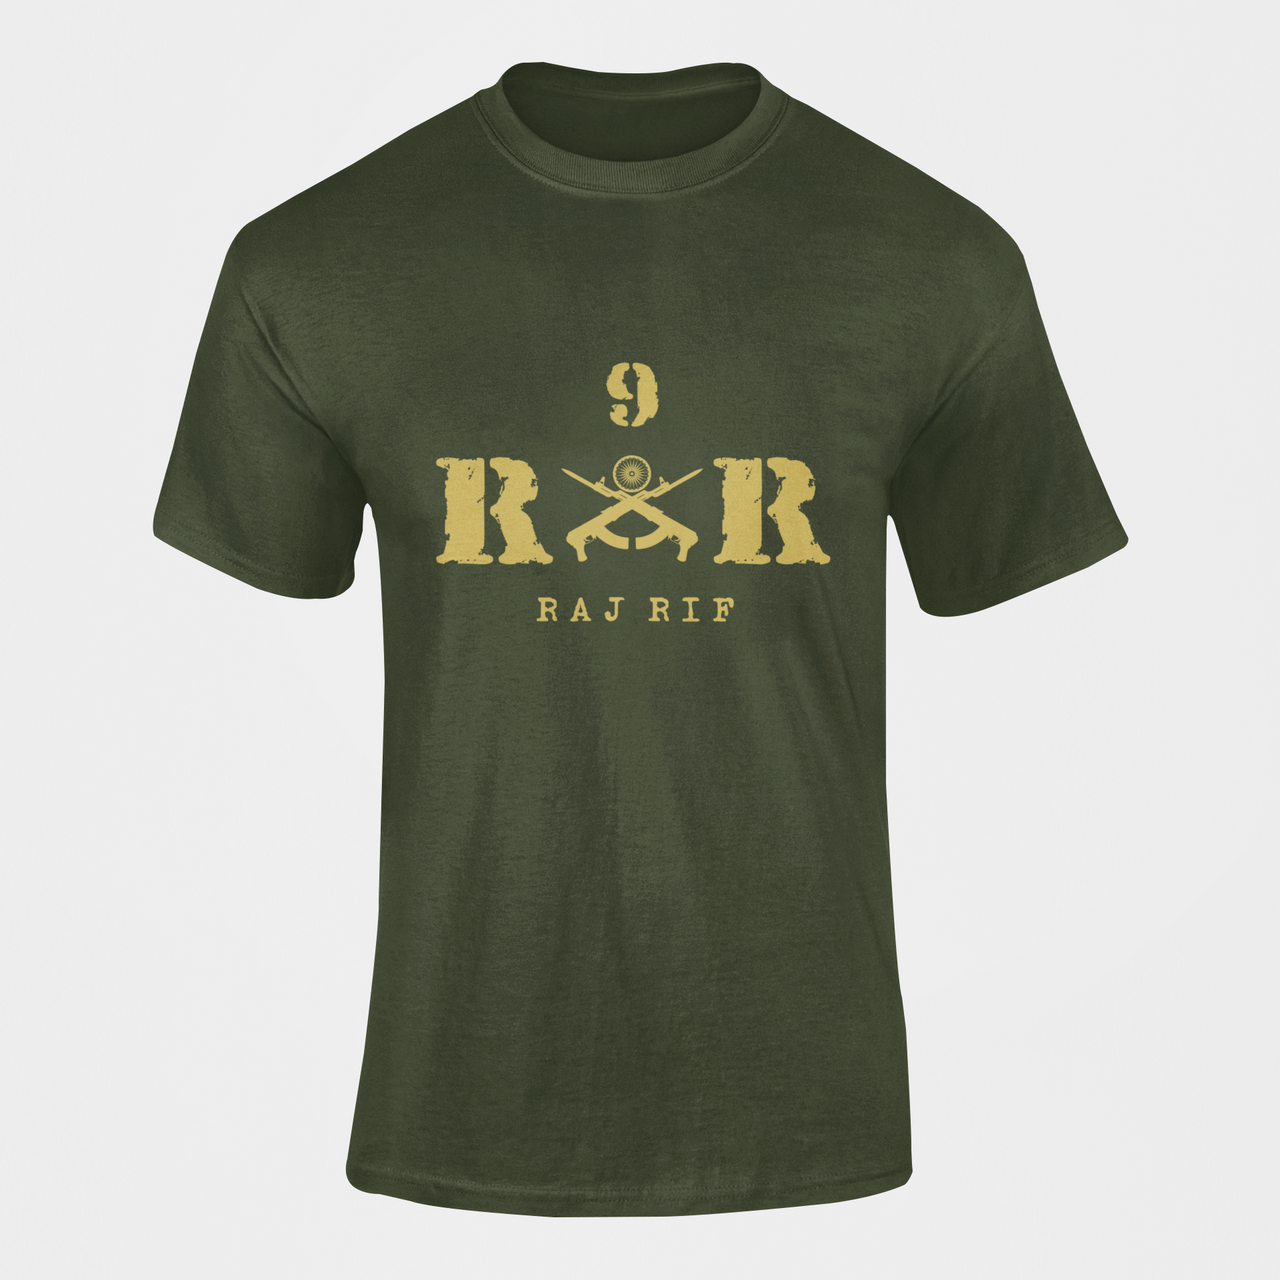 Rashtriya Rifles T-shirt - 9 RR Raj Rif (Men)